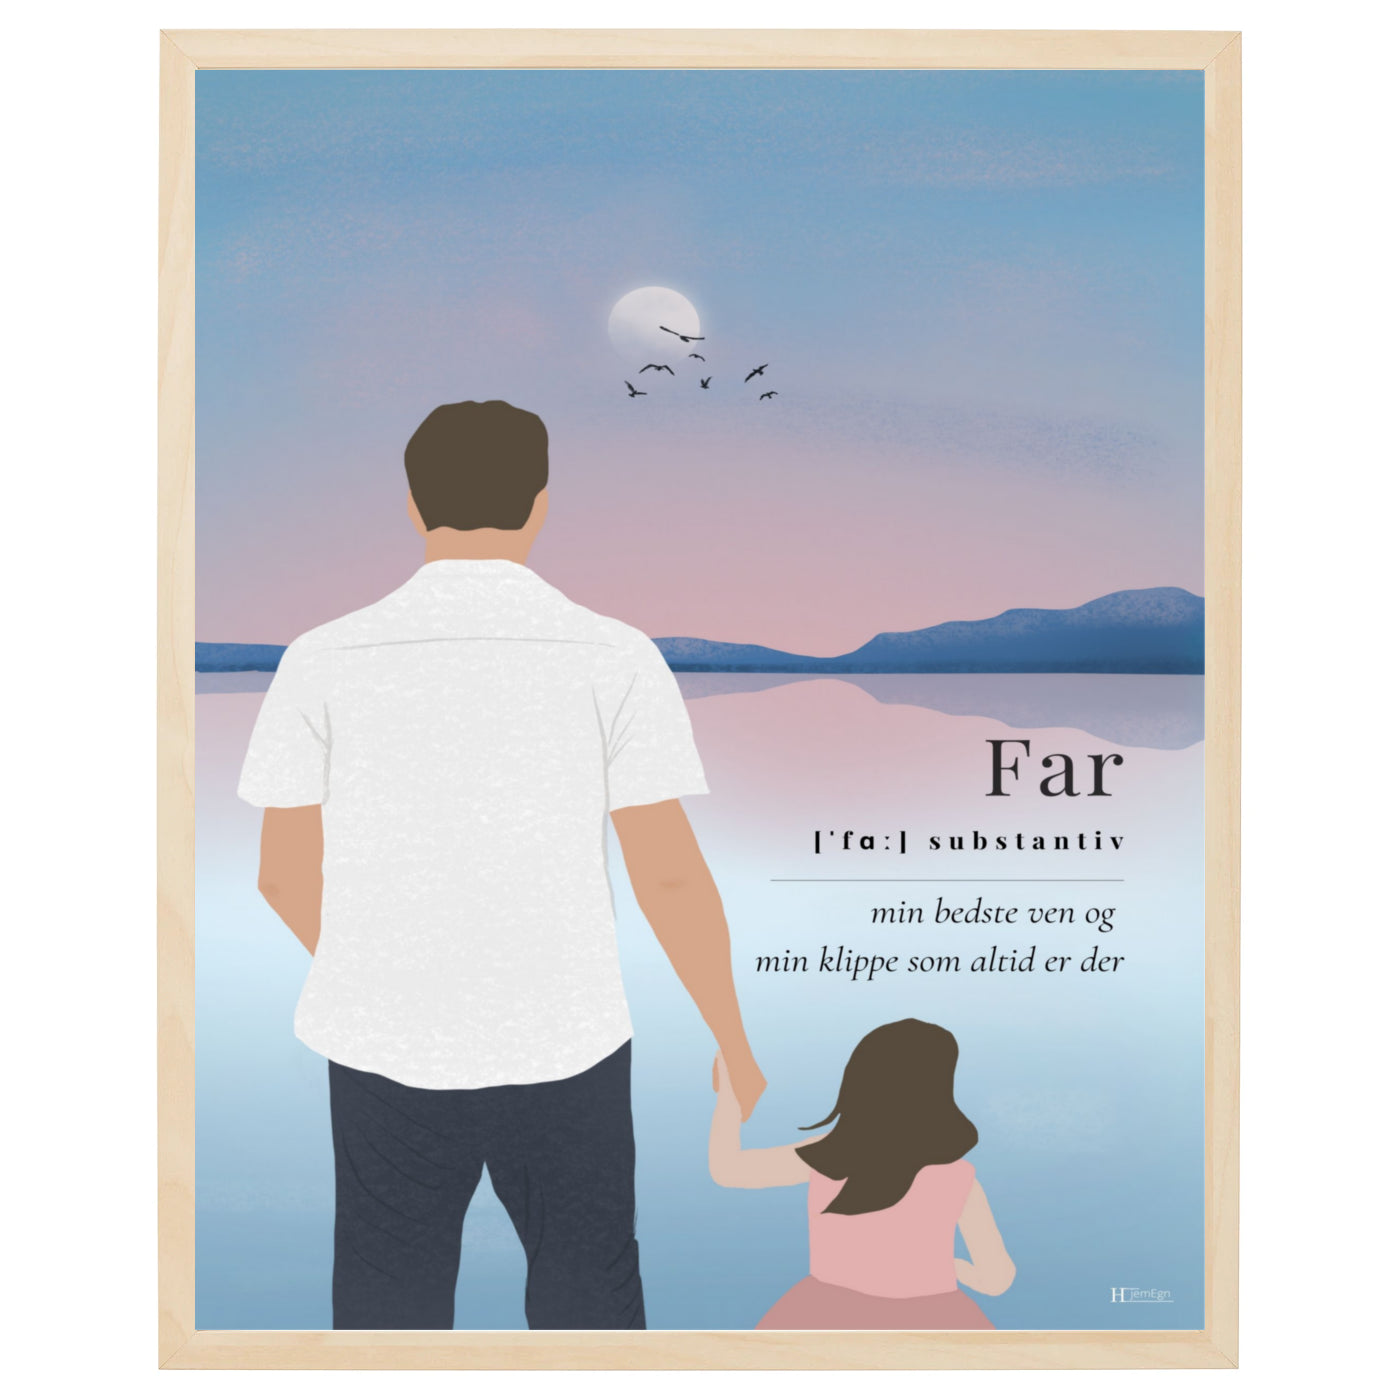 far plakat med en far der står sammen med sin pige i hånden og spejder ud over vandet samt tekst om at far er min bedste ven